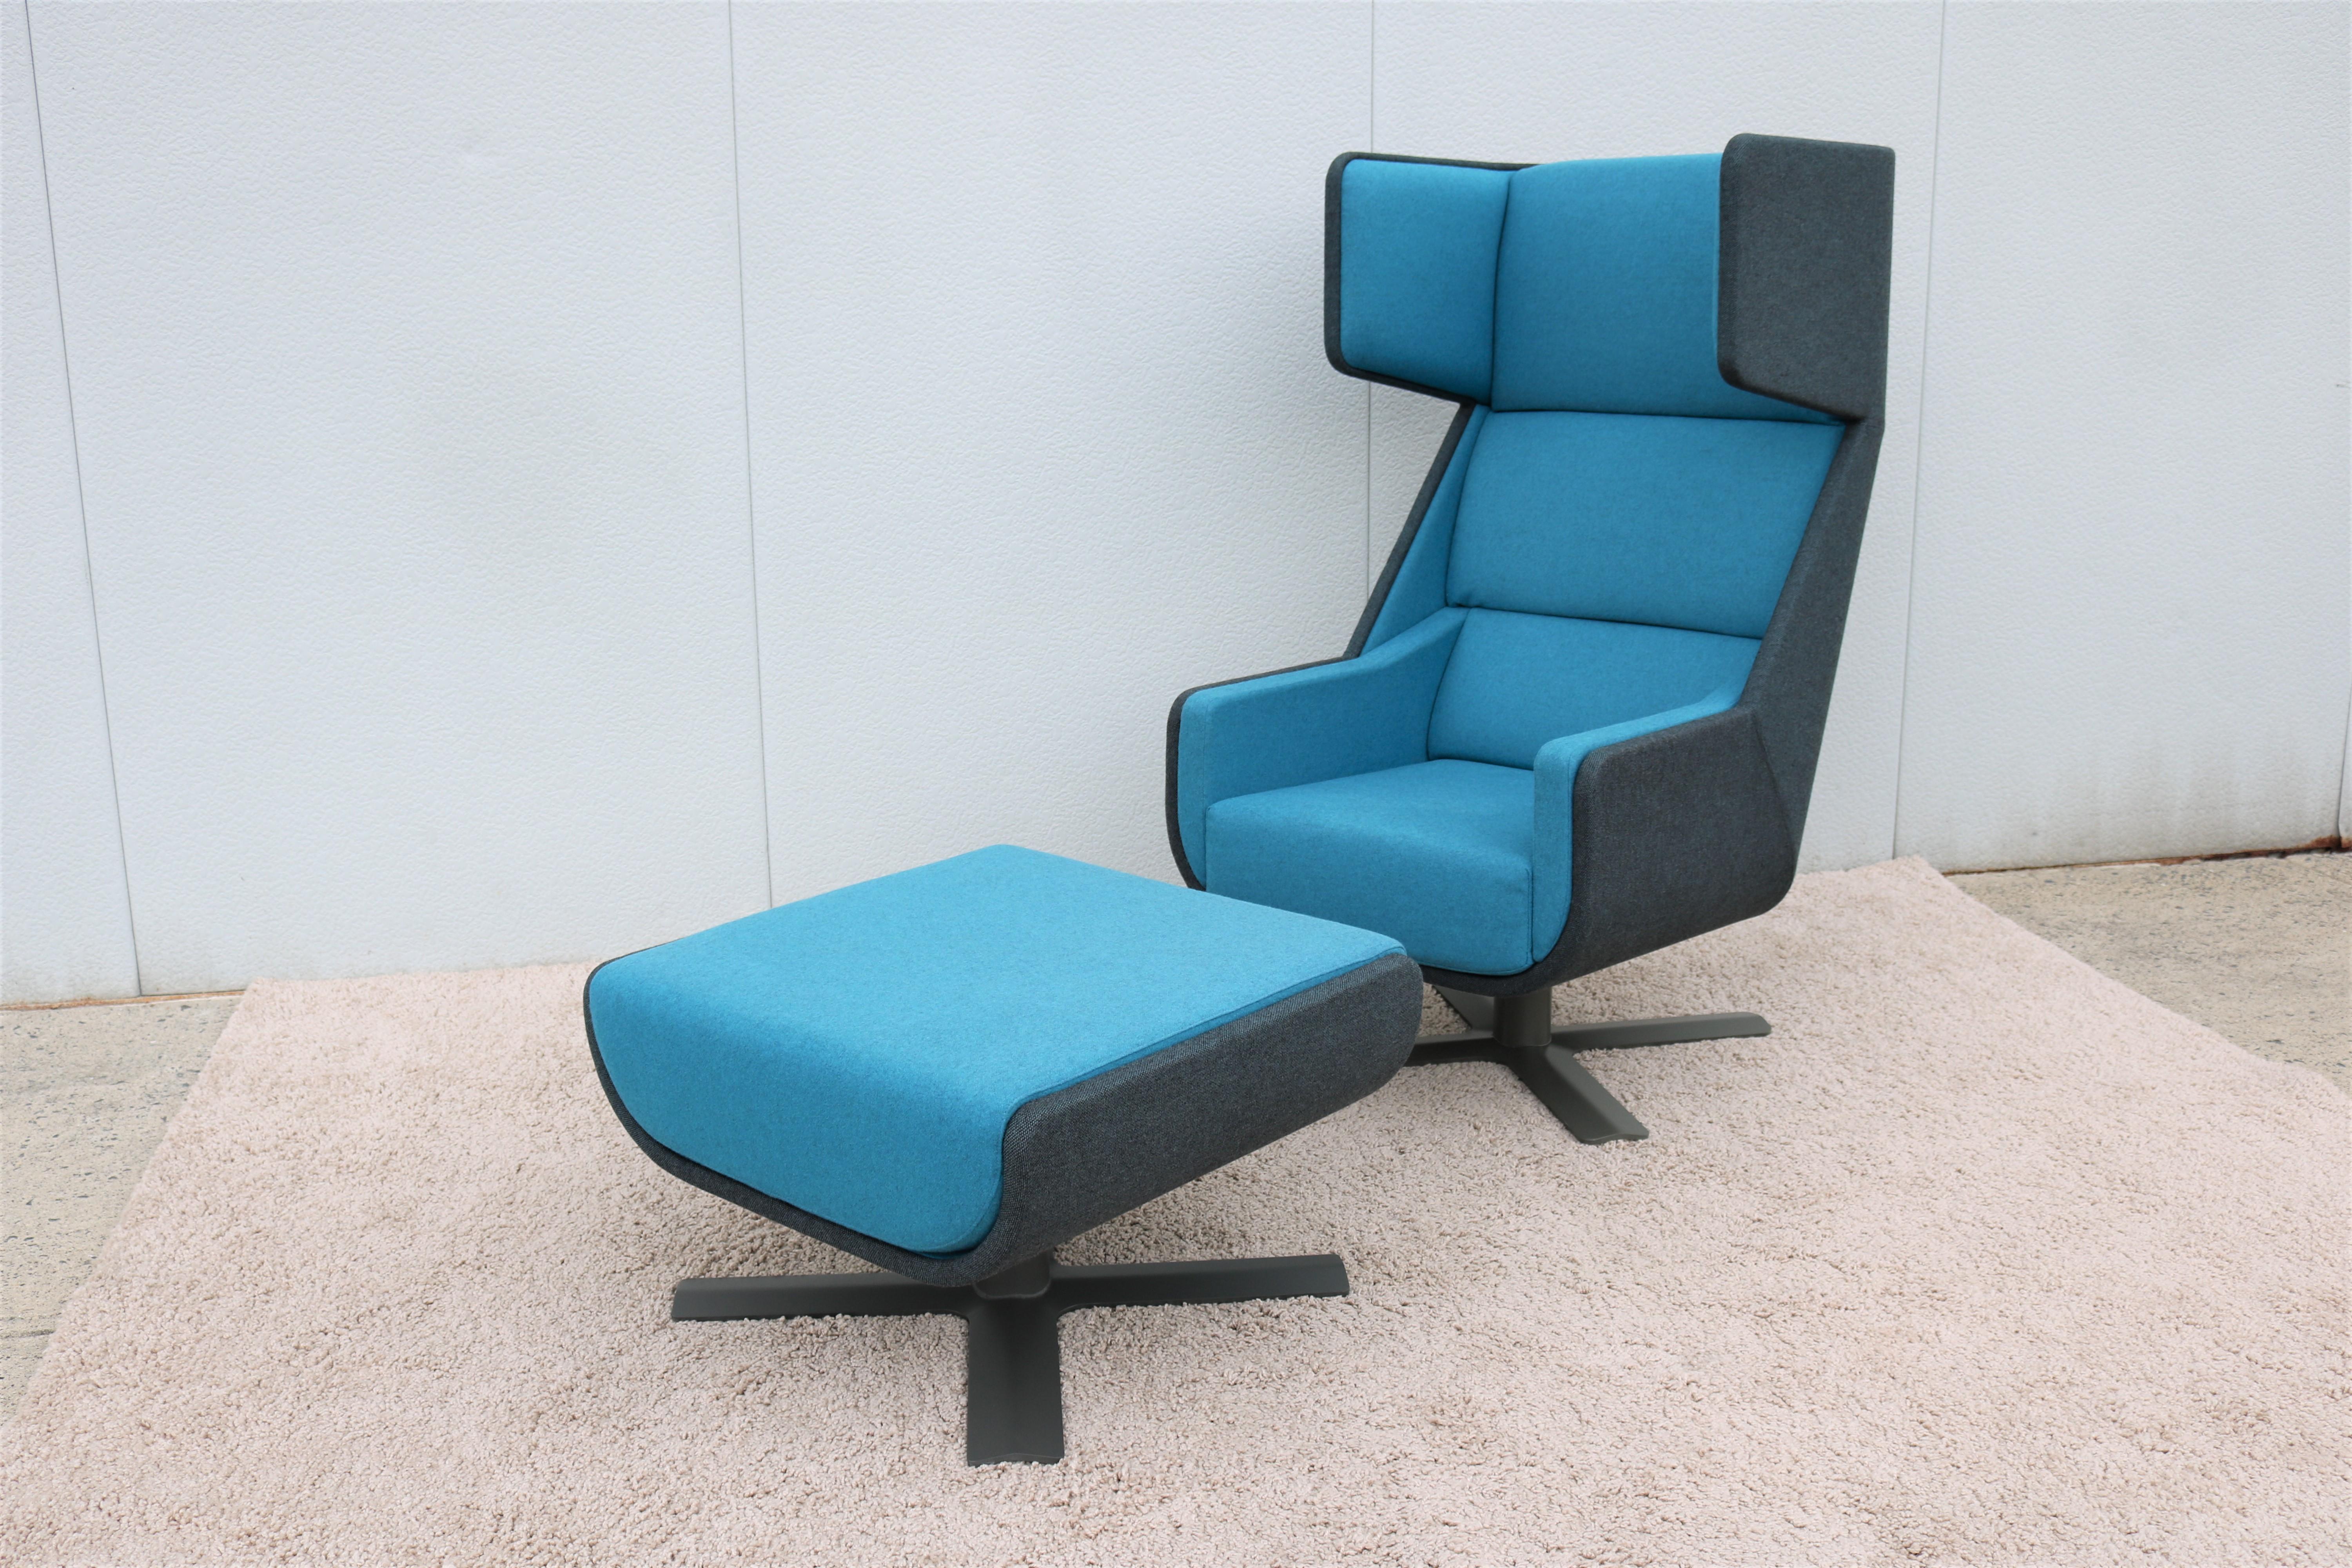 Le fauteuil de salon BuzziMe allie fonctionnalité et ergonomie. Il est construit avec des matériaux acoustiques denses et performants qui absorbent les sons.
Son design unique a été développé intentionnellement pour réduire les bruits extérieurs et